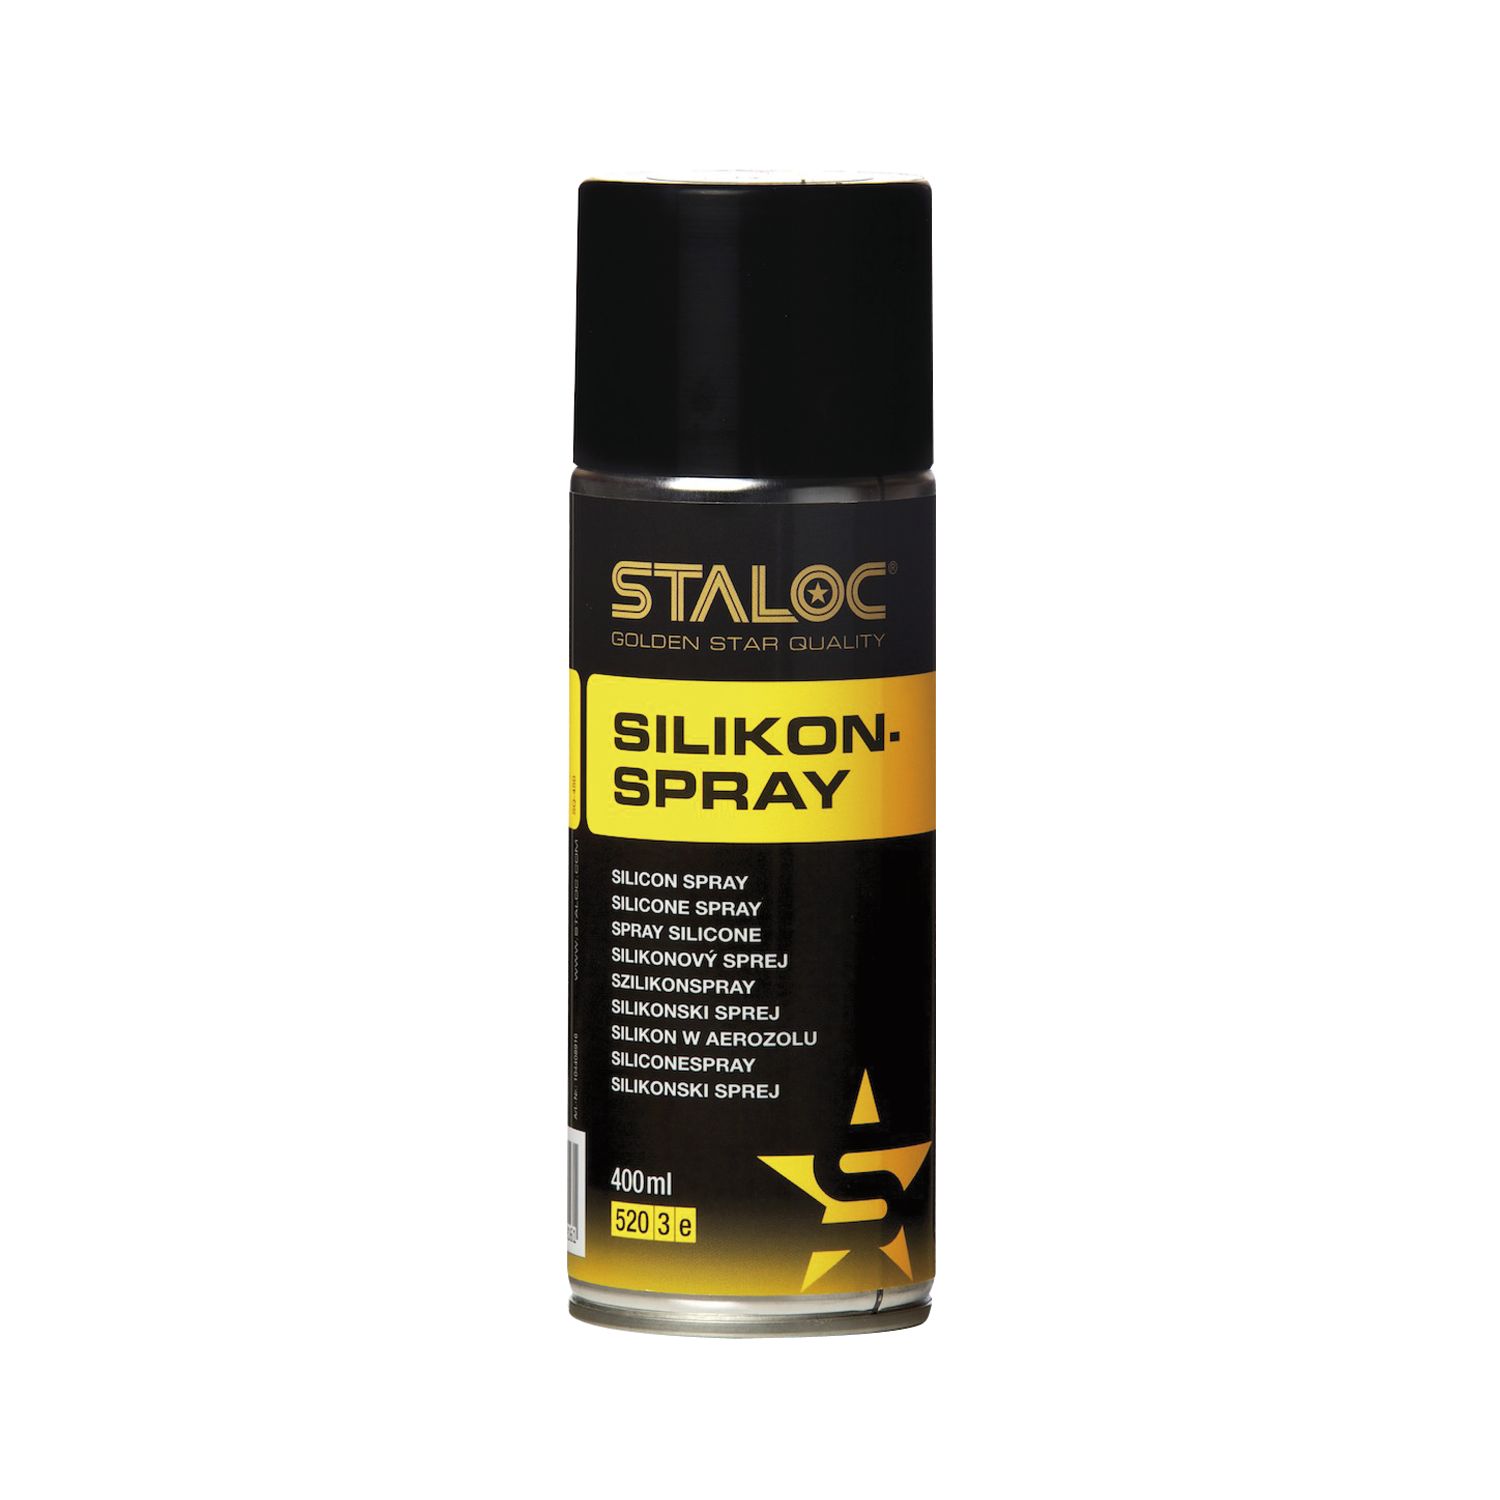 STALOC Silikon-Spray | hochwertig | hochkonzentriertes Schmier-, Gleit- und Trennmittel | 400 ml